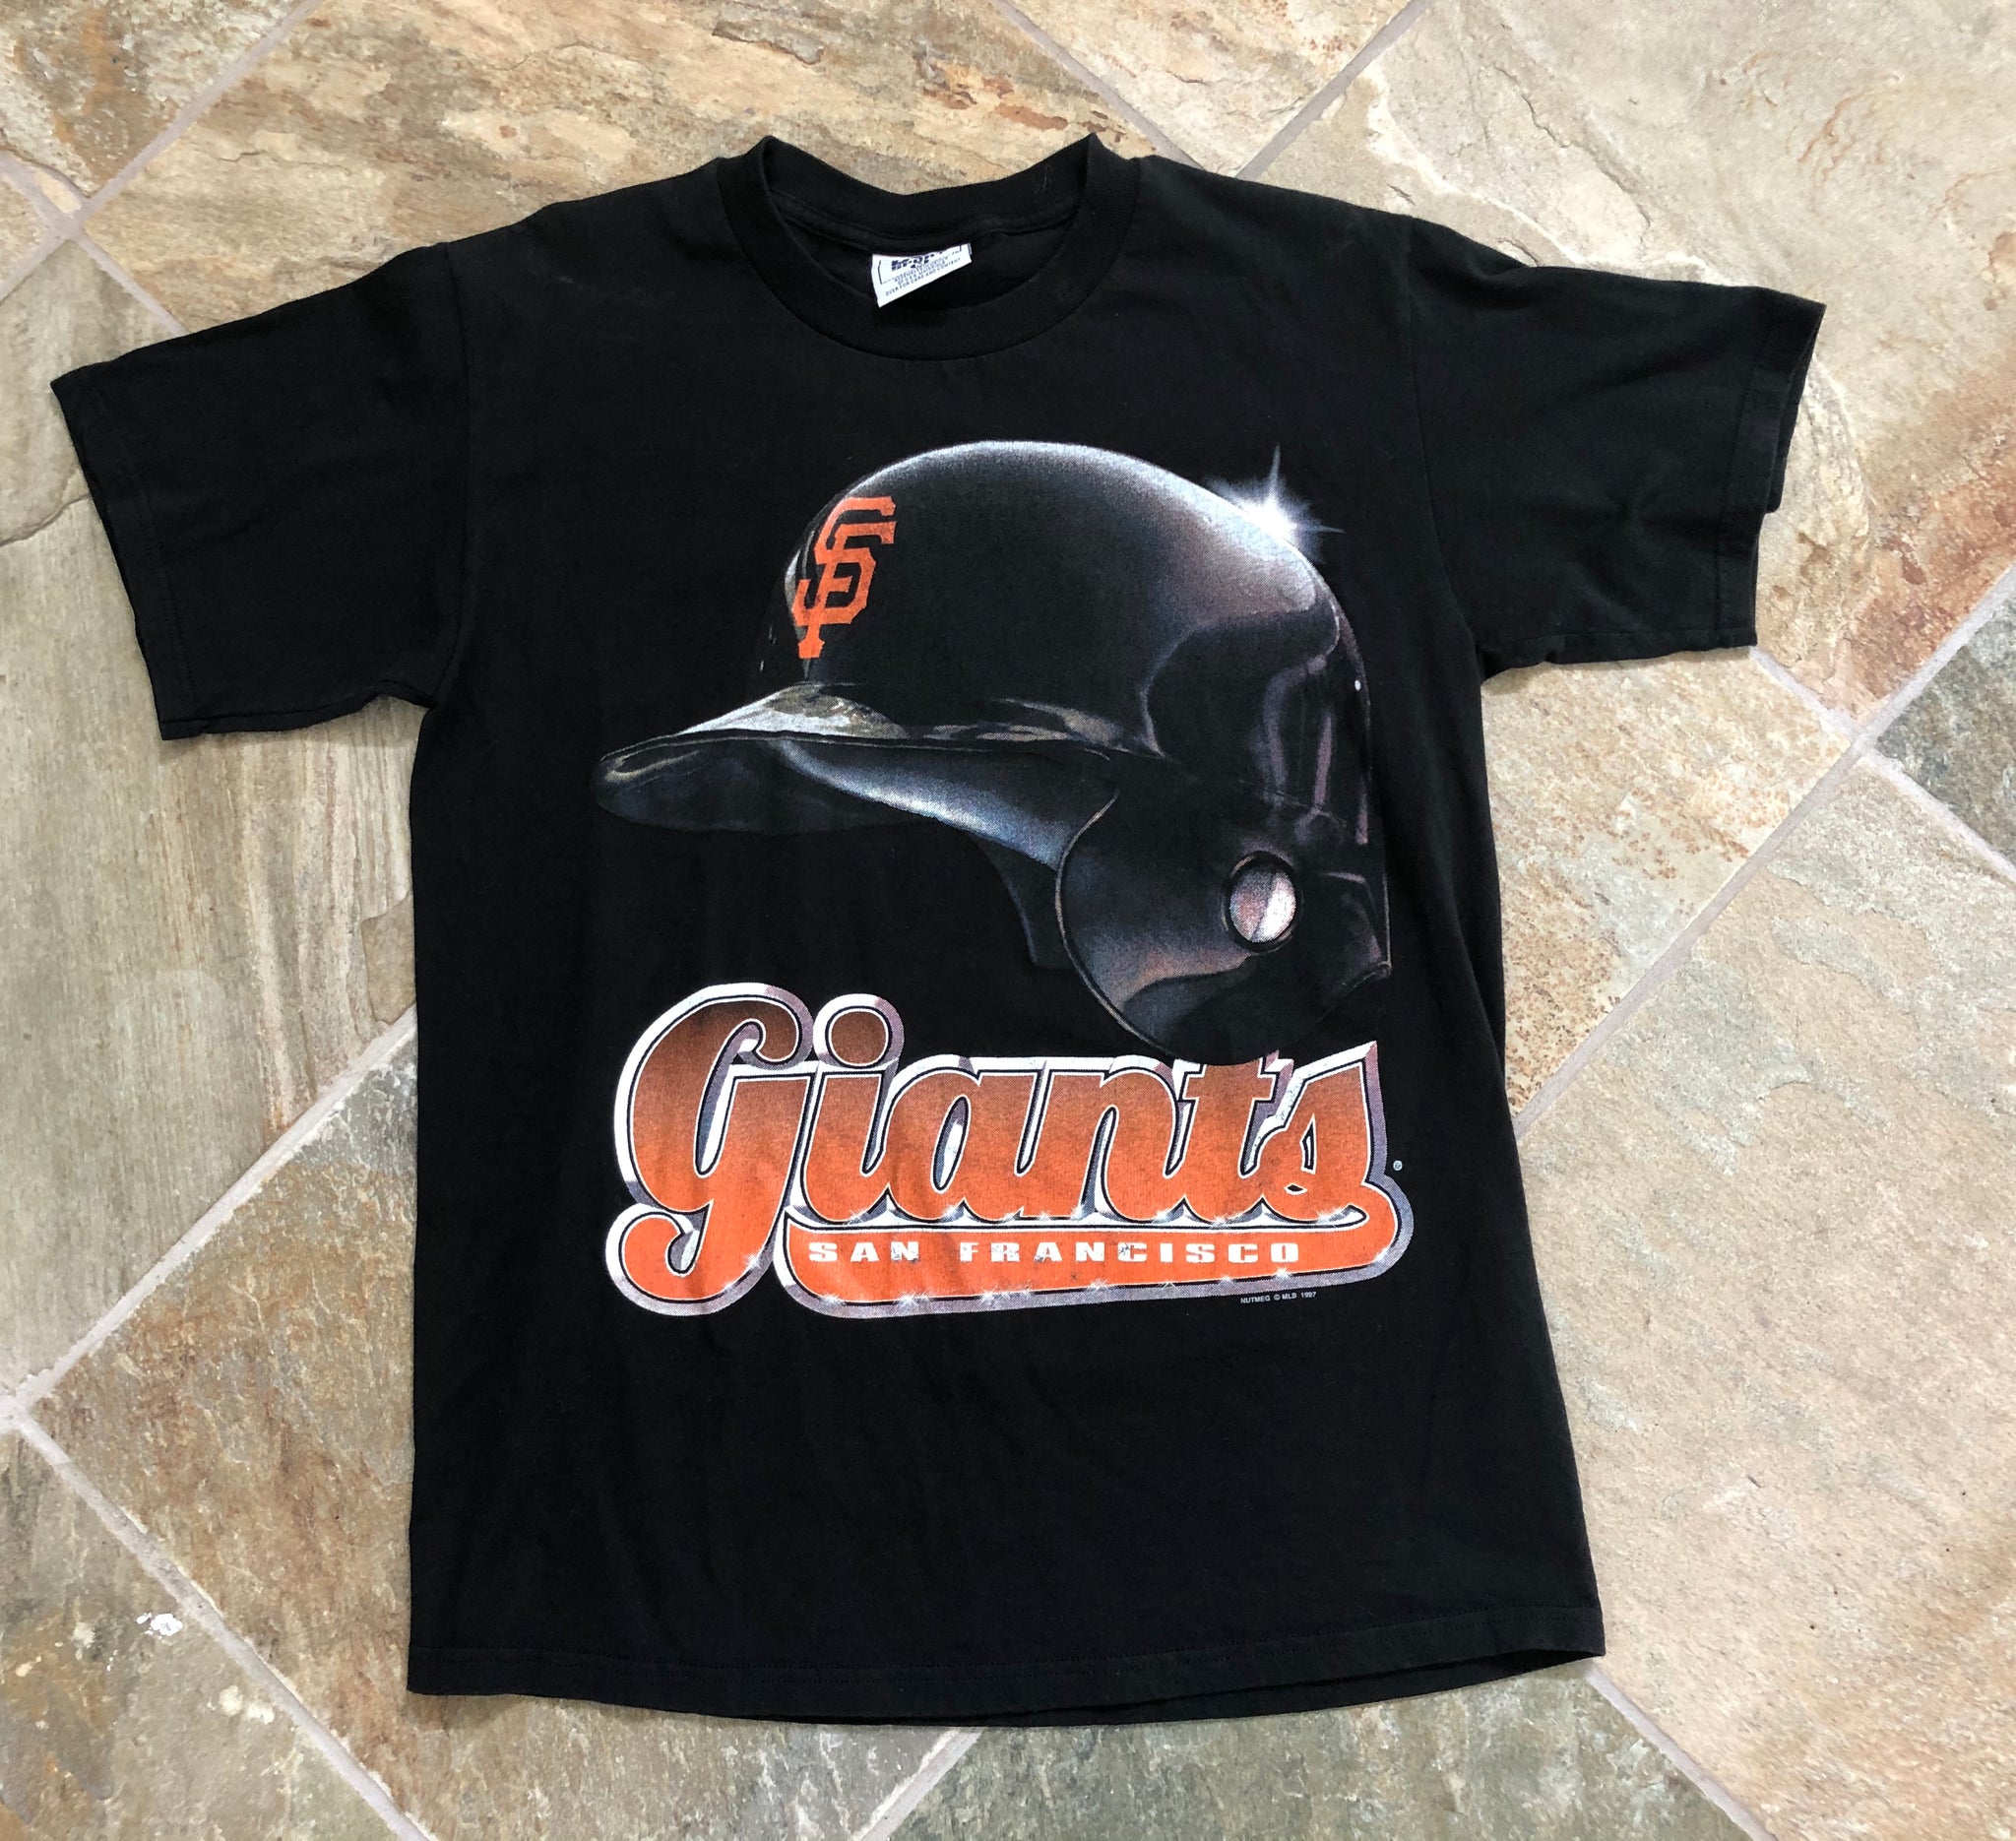 San Francisco Giants 1999 Lee Sport Vintage 90's Big Print T-Shirt –  thefuzzyfelt